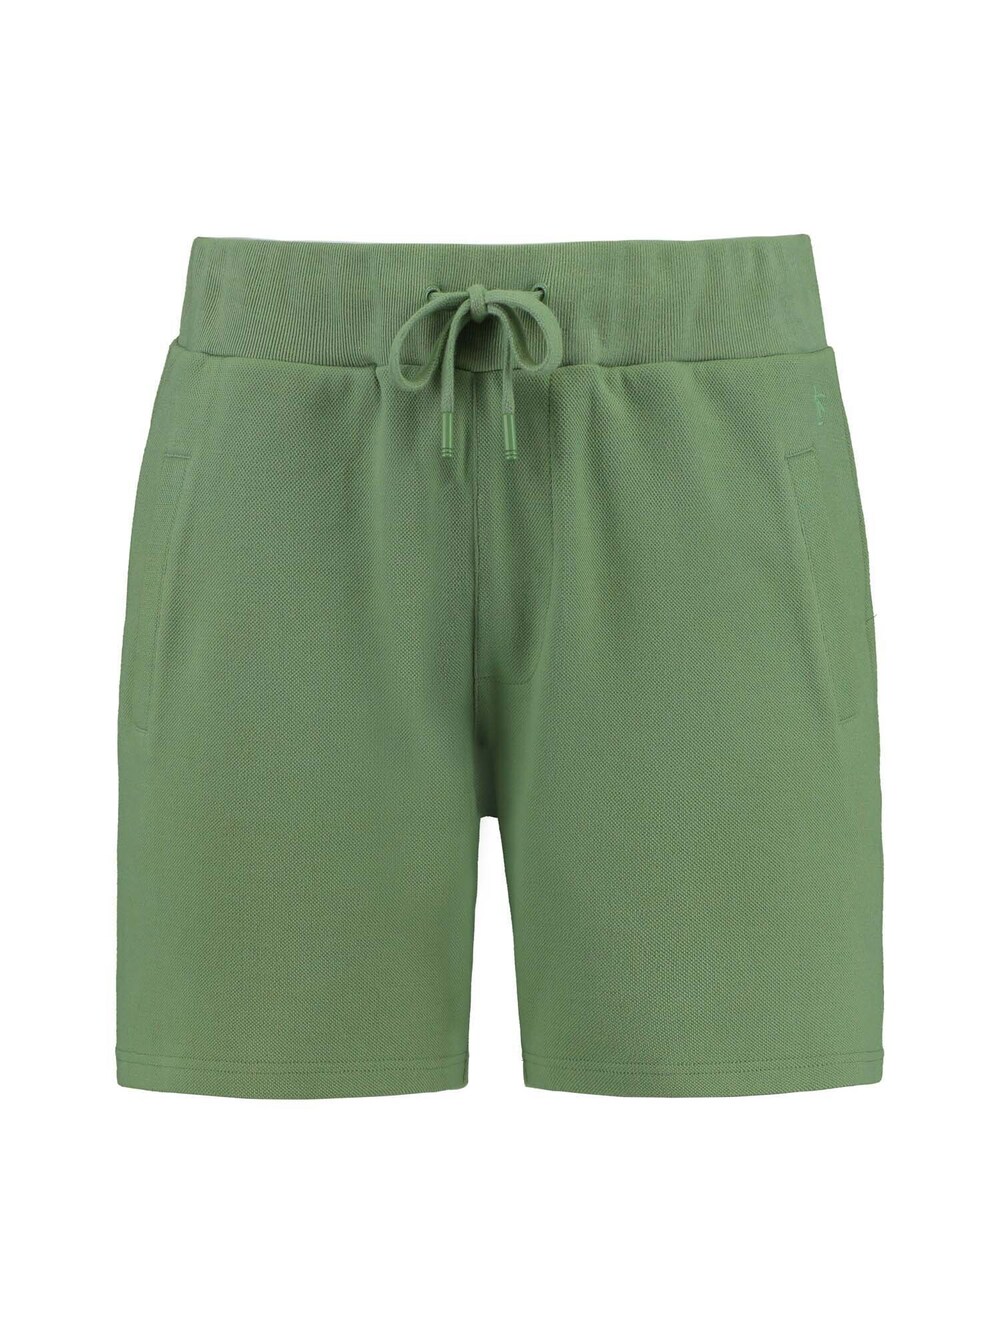 Обычные брюки Shiwi Mavis, трава зеленая юбка kaffe vilia трава зеленая